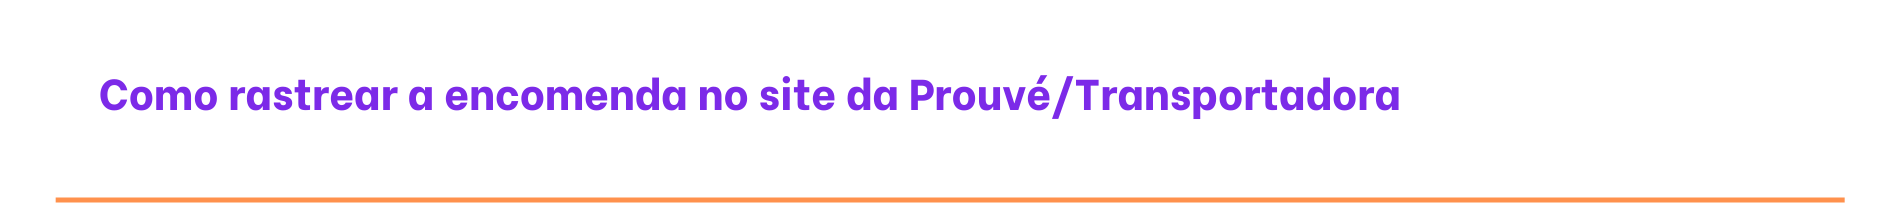 Como rastrear a sua encomenda no site da Prouvé:Dhl